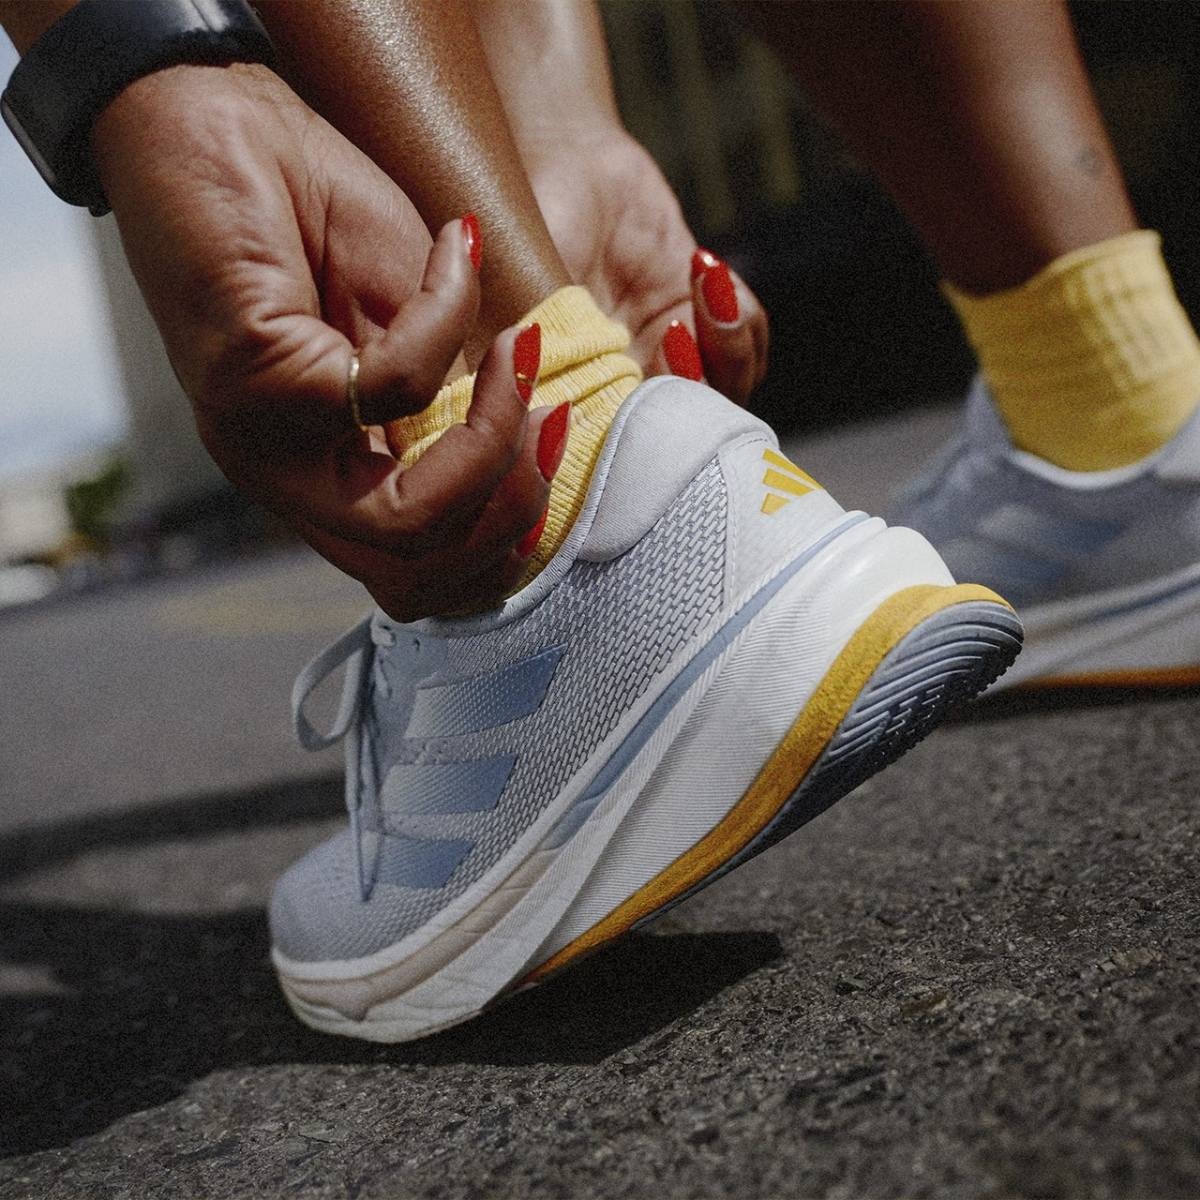 Adidas vuole avvicinarsi al runner più popolare con queste 3 nuove scarpe della linea Supernova